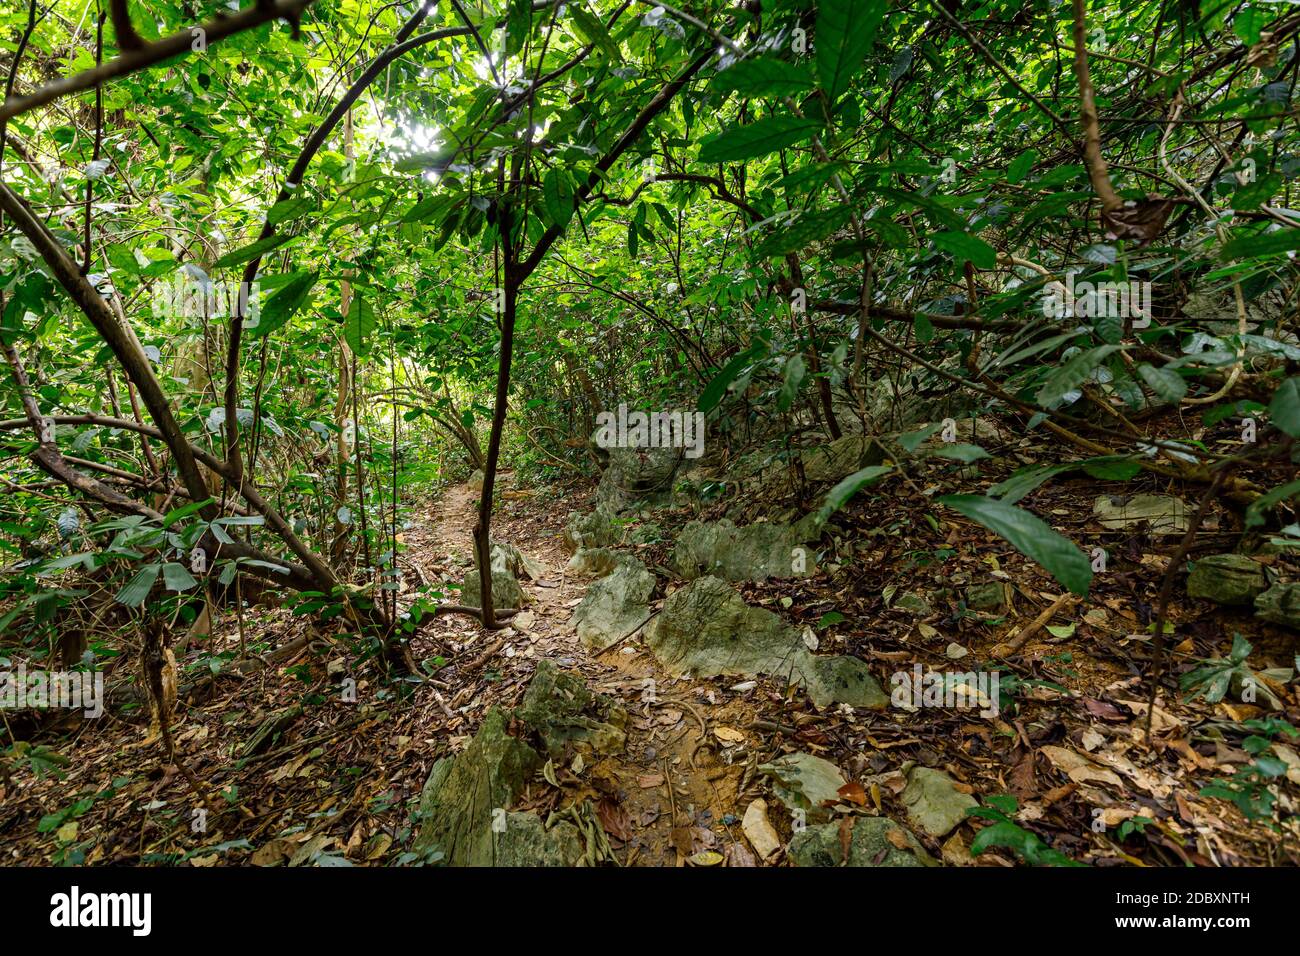 La selva de CUC Phuong en Ninh Binh en Vietnam Foto de stock